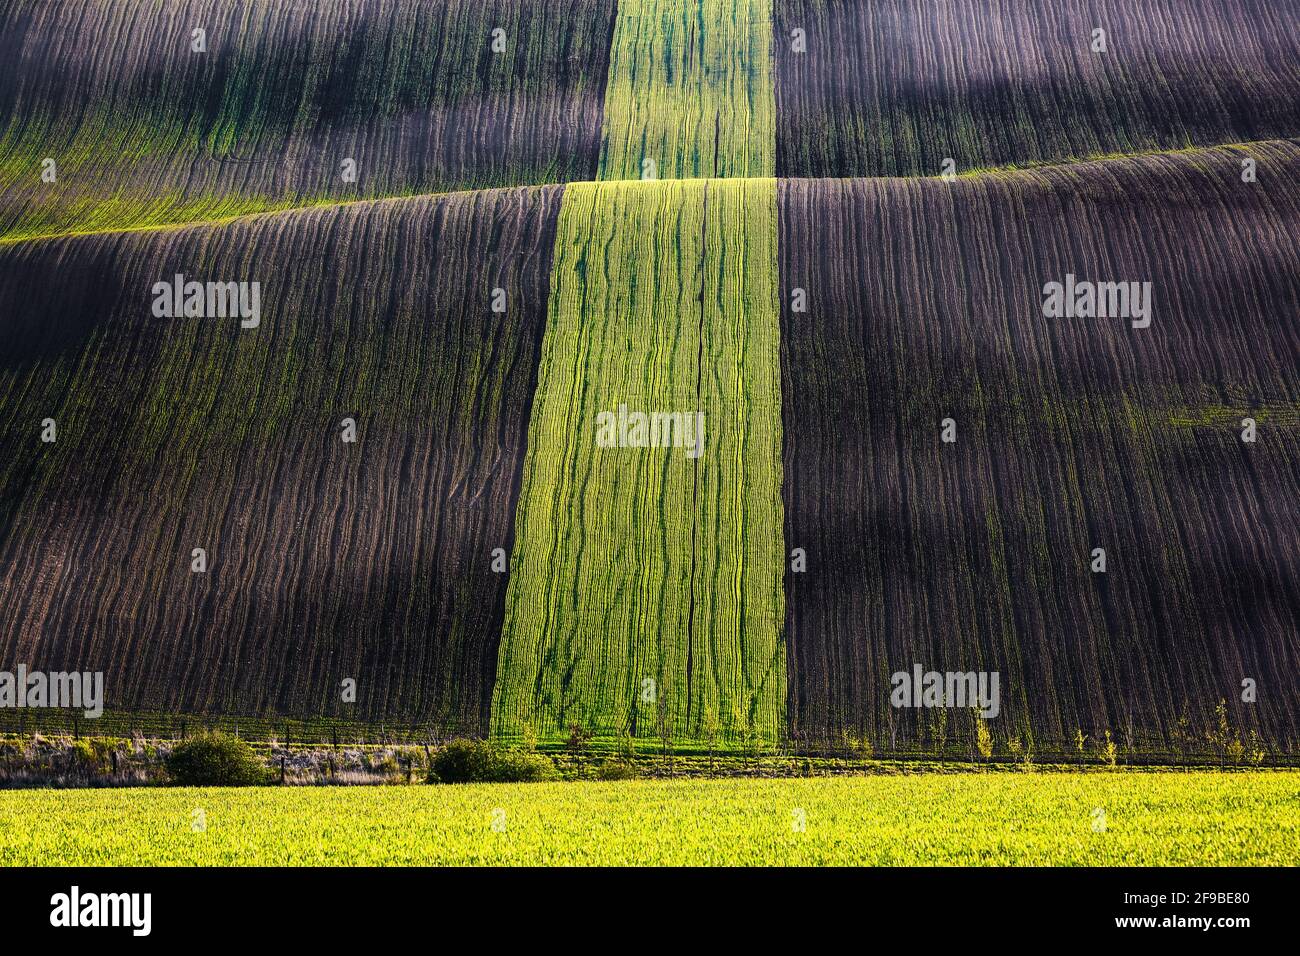 Waley ist interessant erleuchtet durch die Strahlen, Spiel von Licht und Schatten auf dem Feld mit Landwirtschaft grünen Gras. Südmährische Region Tschechische Republik. Stockfoto